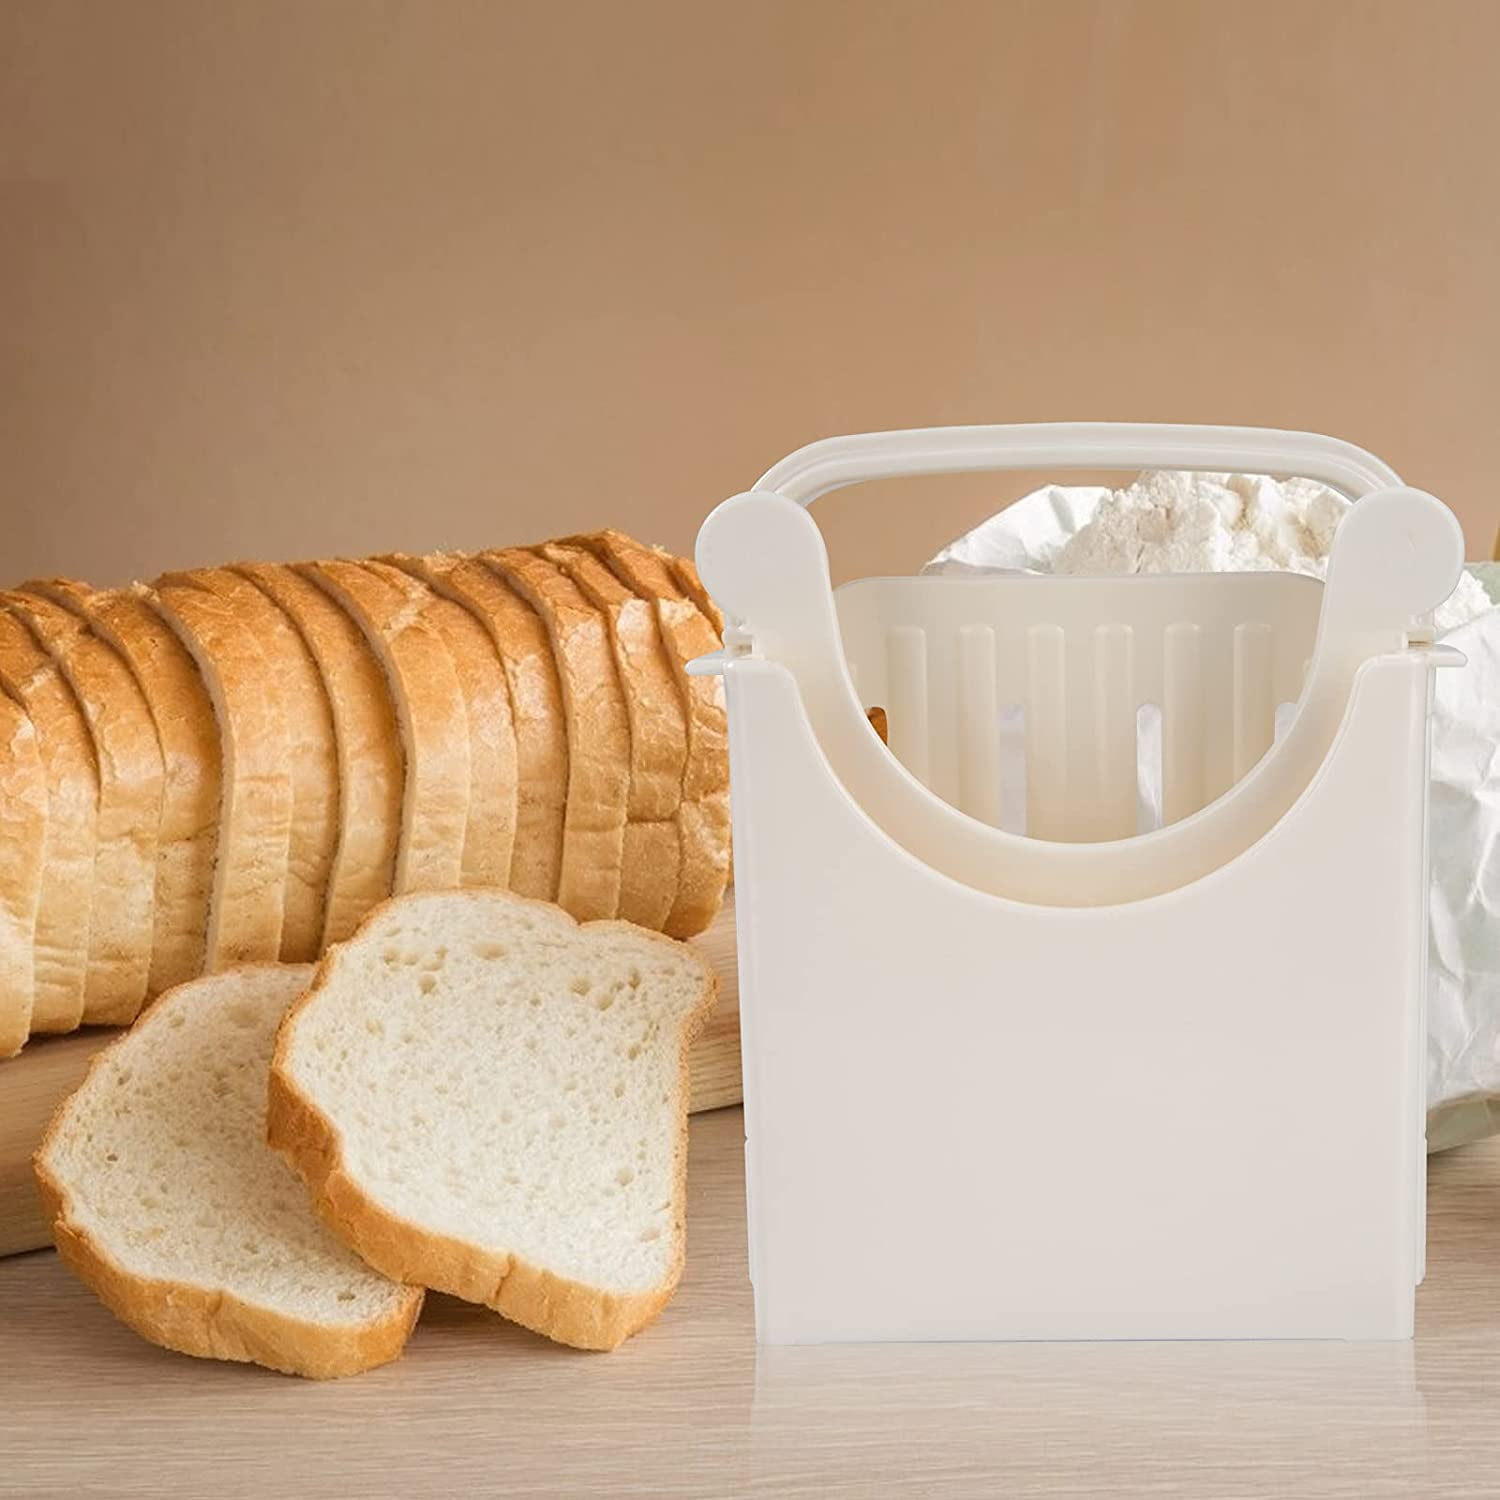 1 Pack Bread Slicer Guide,table Bread/Roast/Loaf Slicer Cutter,Sandwich  Maker Toast Slicing Machine Folding and Adjustable Handed Bread Slicer 